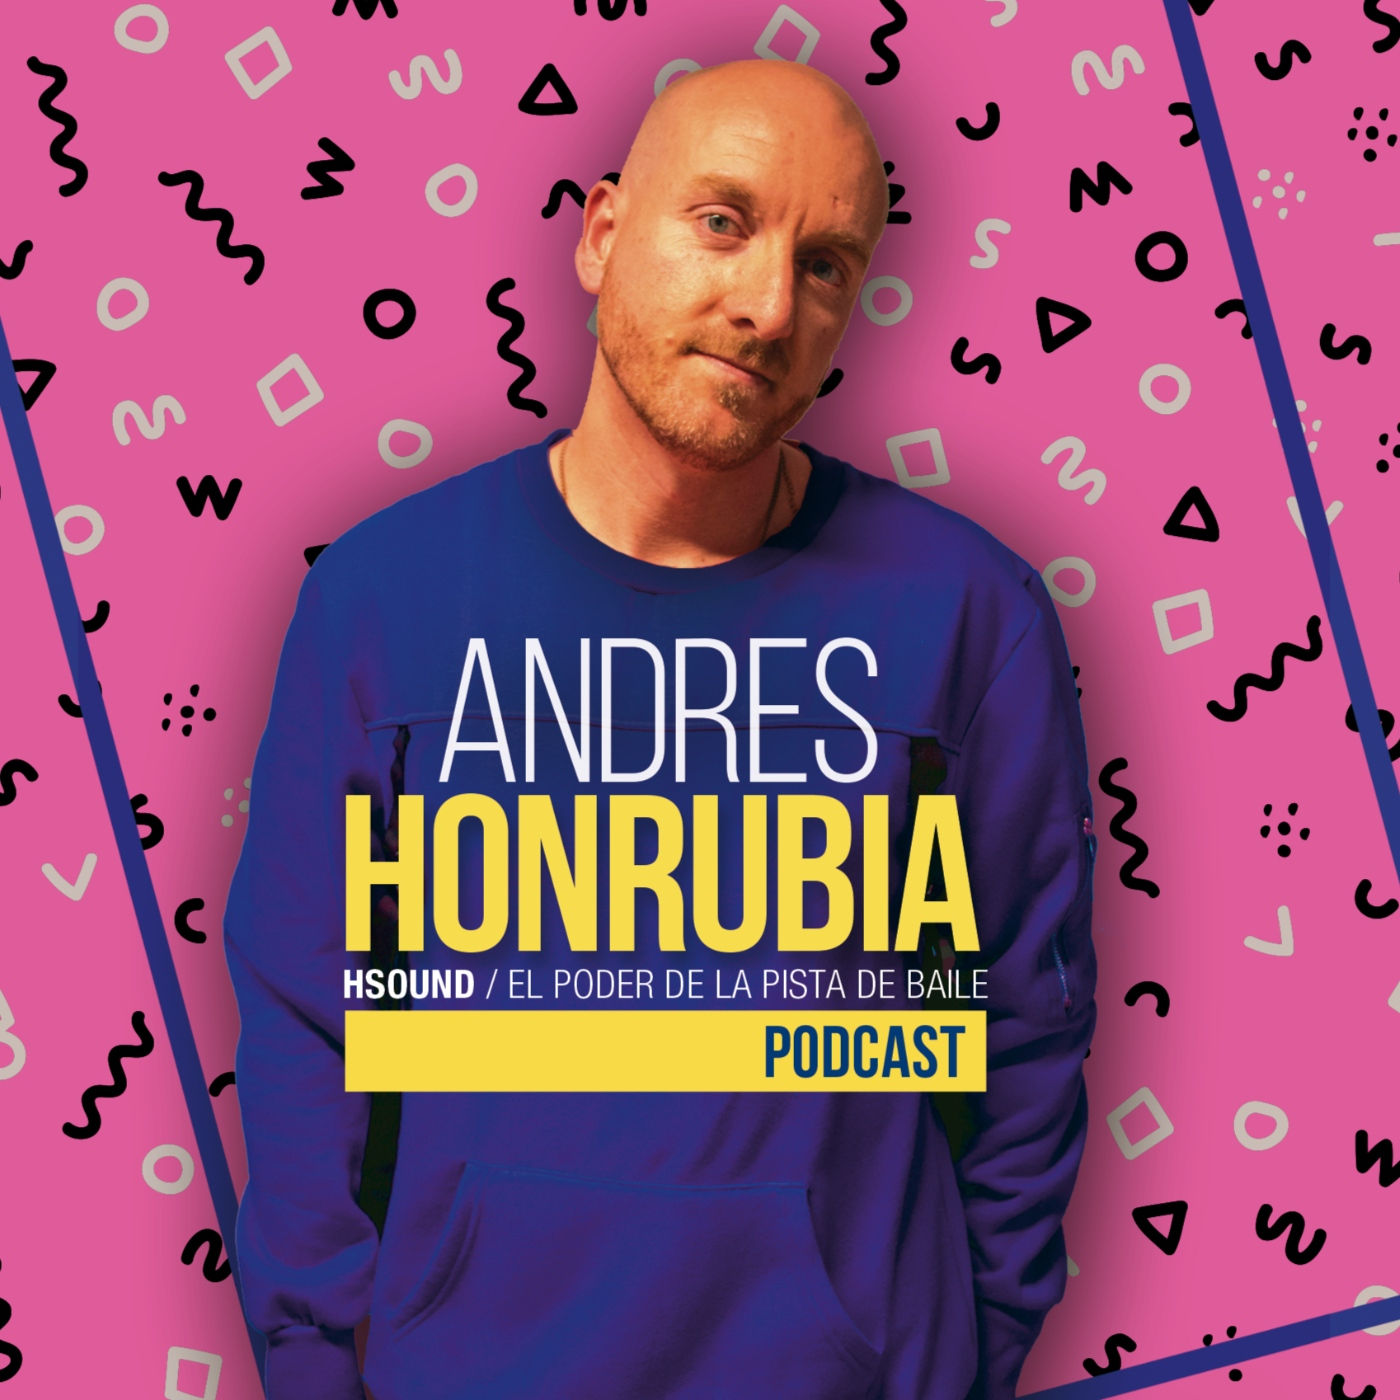 ANDRES HONRUBIA H SOUND